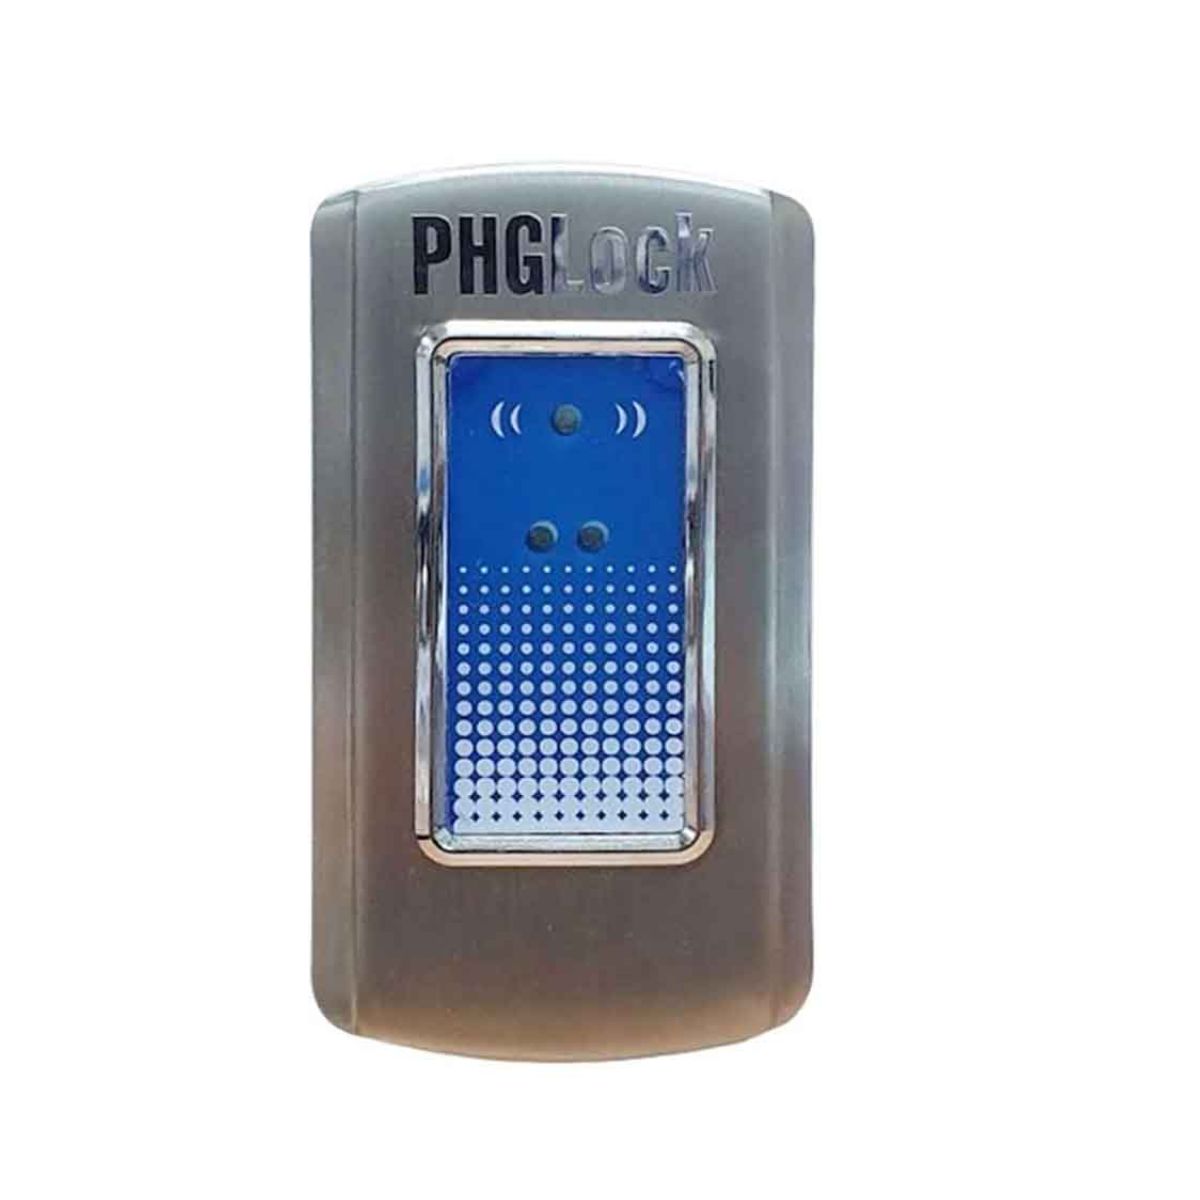 Khóa cửa tủ PHGLock CL9016 dùng thẻ TI, cấu tạo bằng Inox